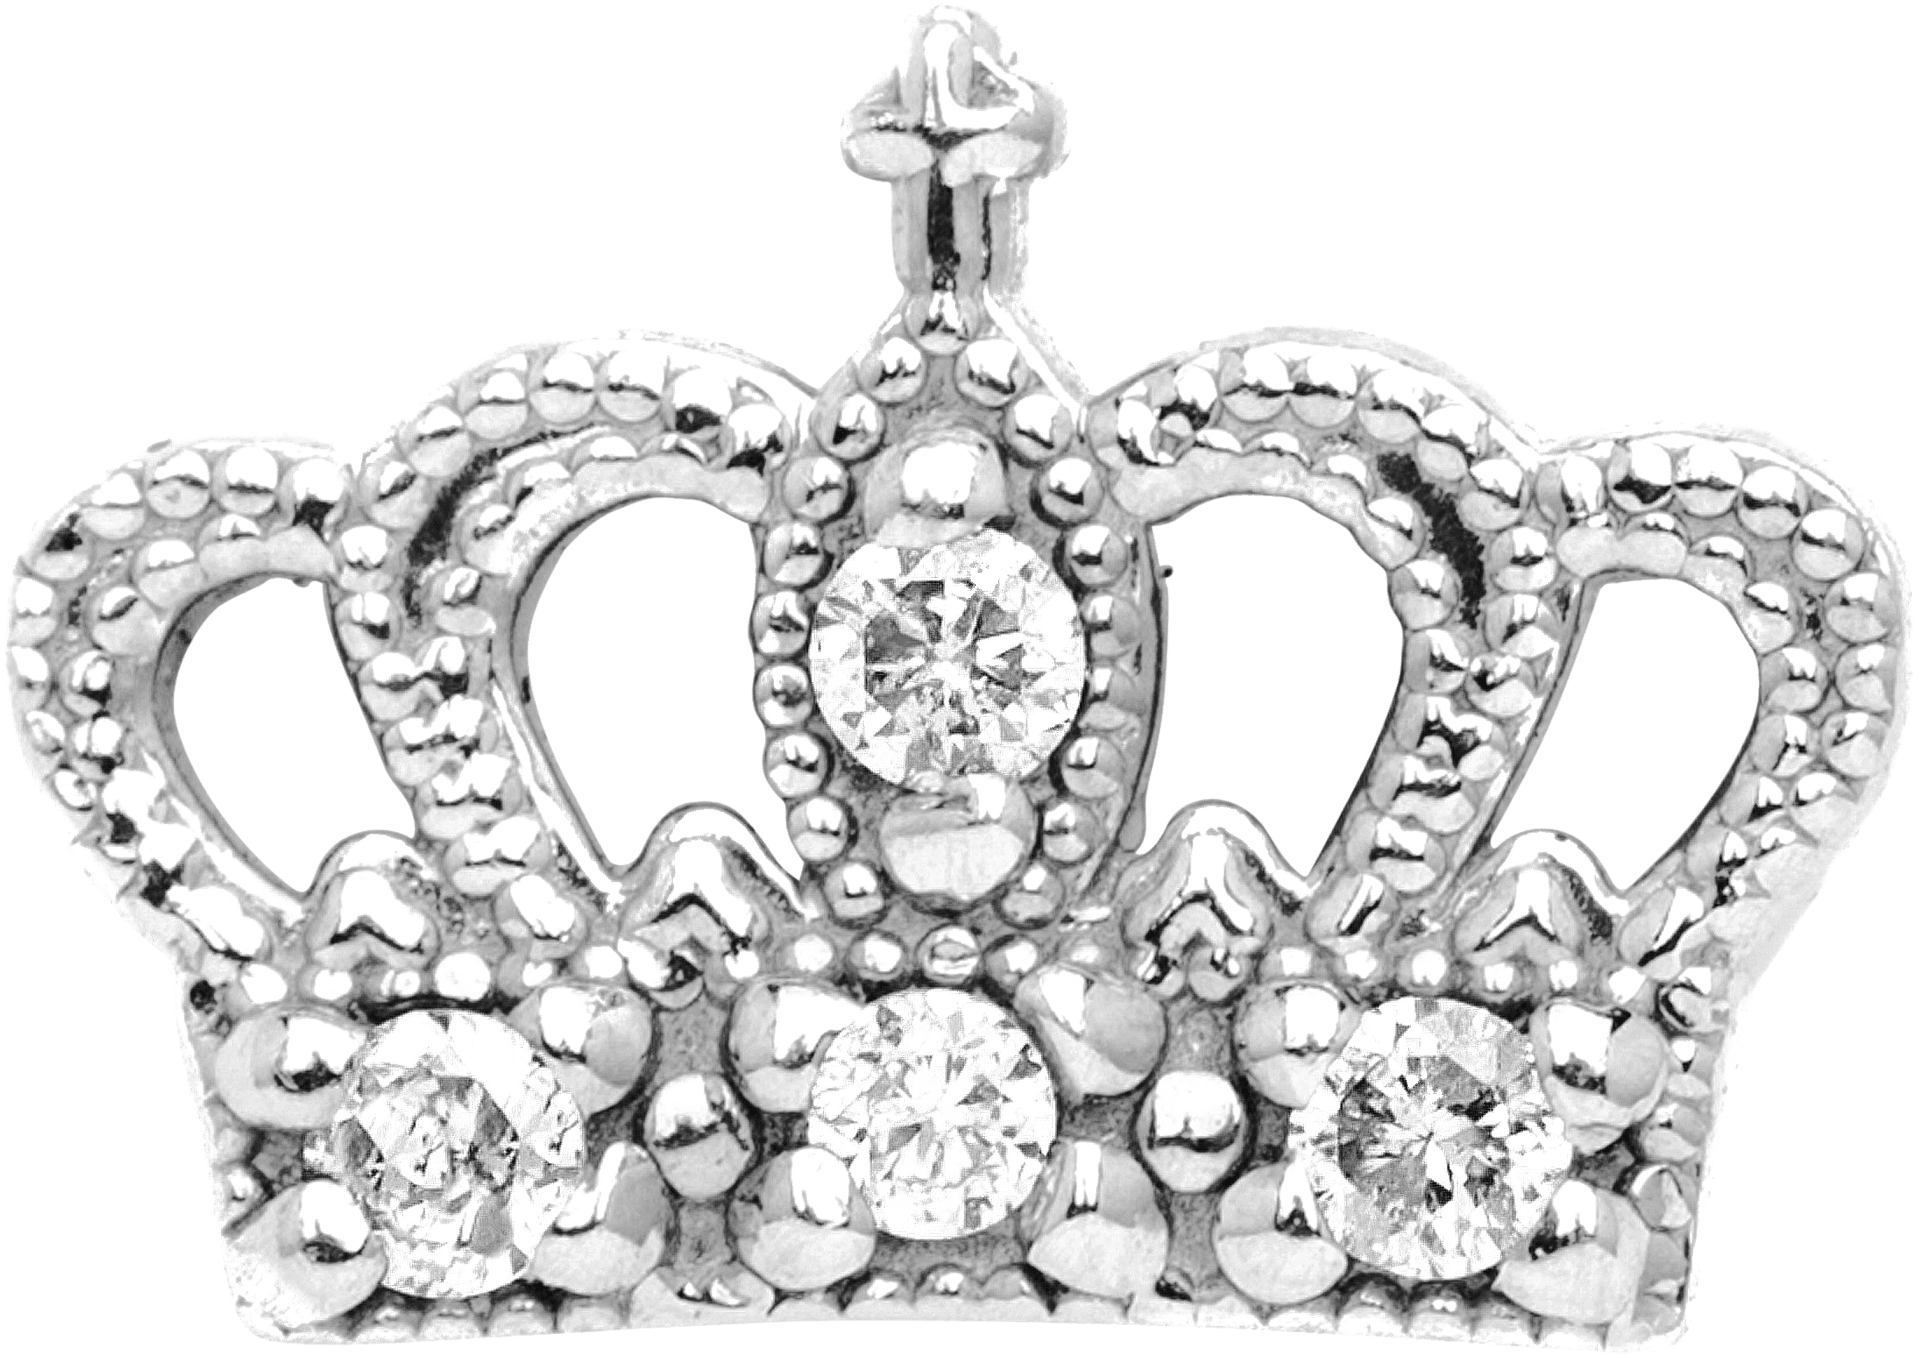 Diamond Studded Crown Image PNG